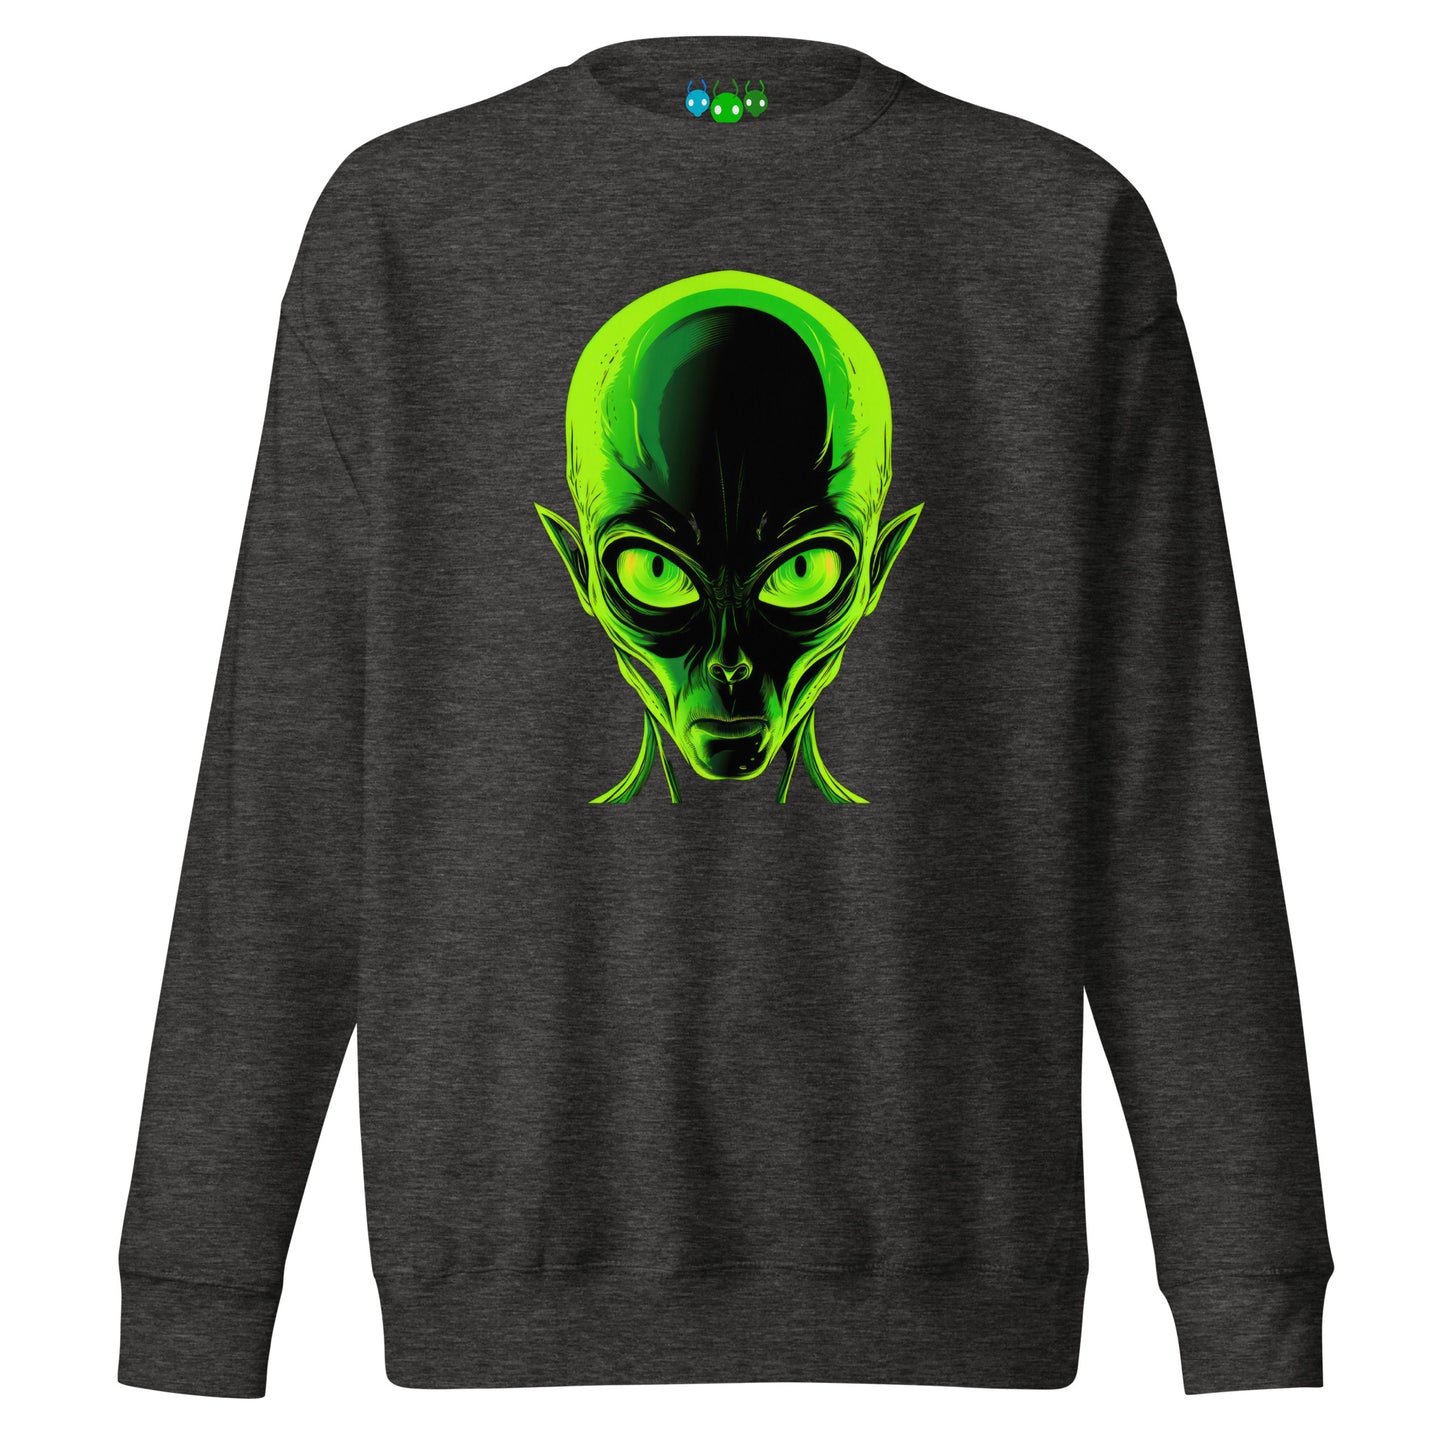 Amazing Green Alien Head Premium Sweatshirt